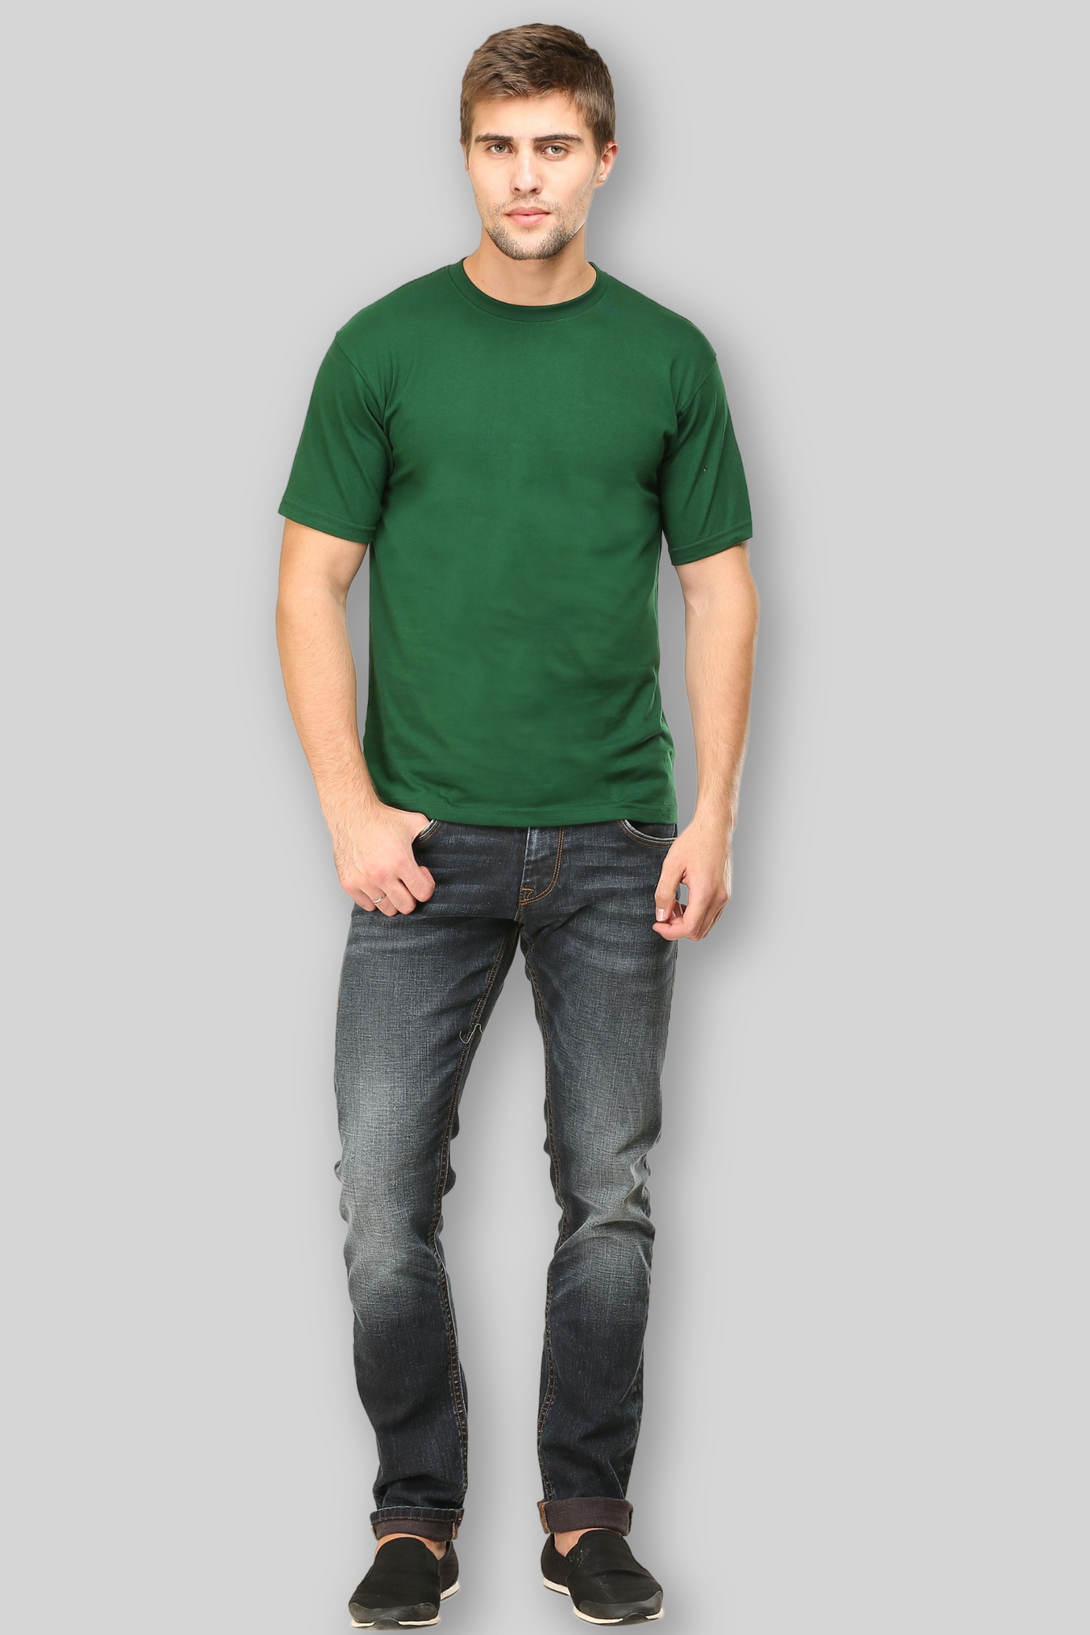 Bottle Green T-Shirt For Men - WowWaves - 1